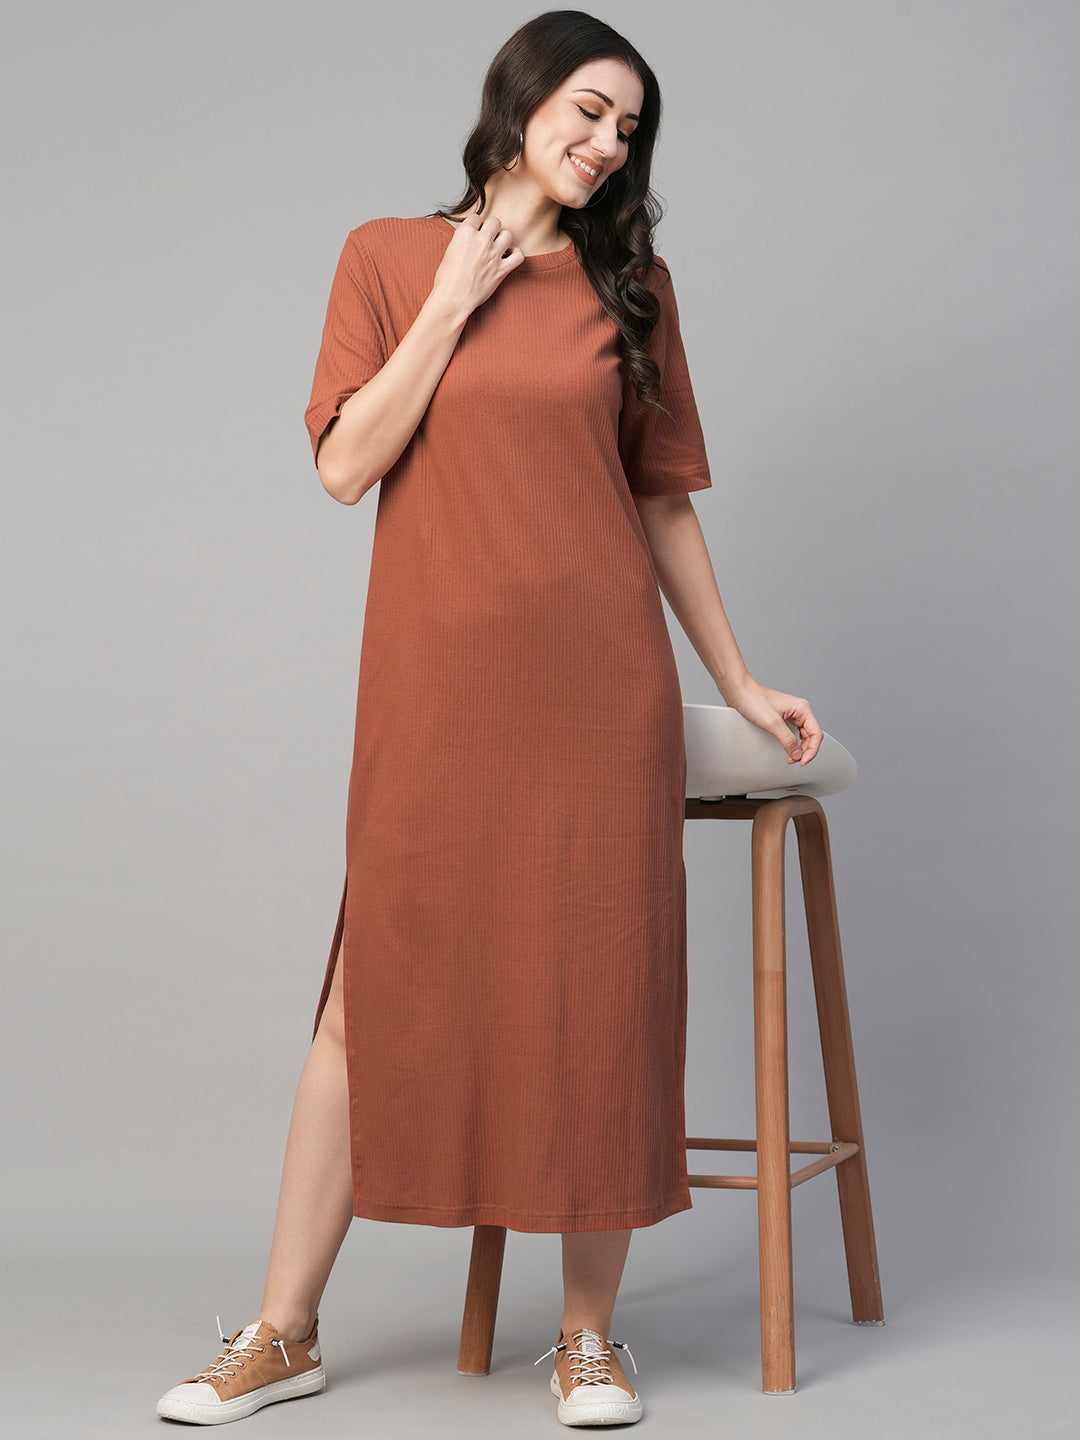 Women's Rust Cotton Elastane Regular Fit Knit Dress